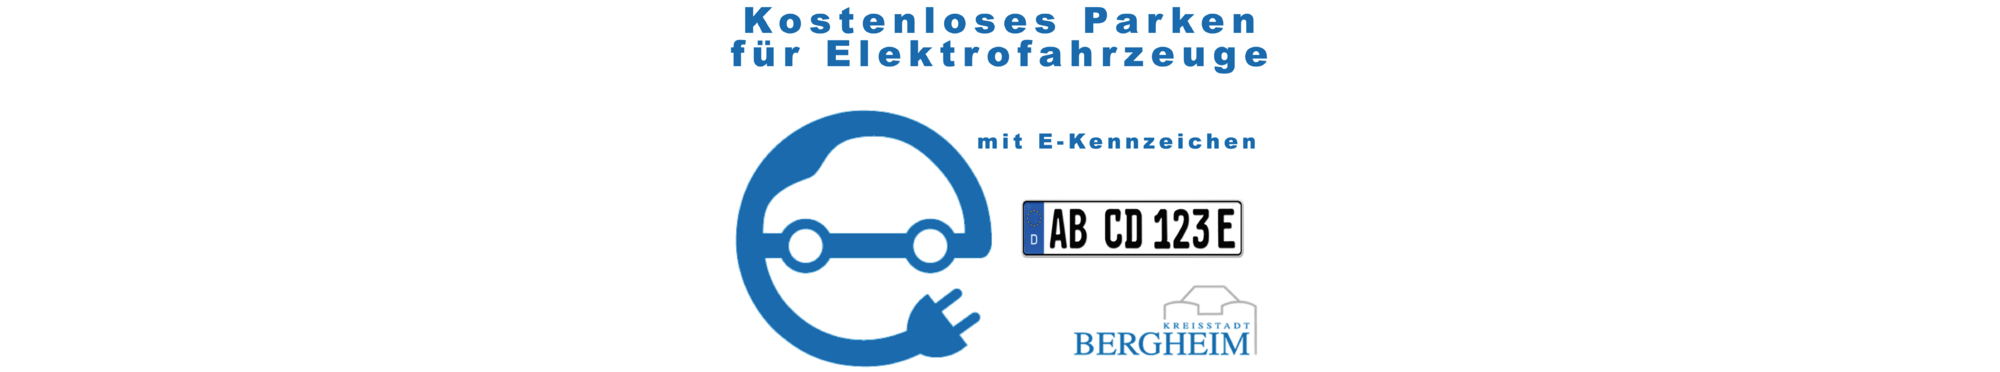 Kostenloses Parken für Elektrofahrzeuge mit E-Kennzeichen. Beispiel E-Kennzeichen, Logo Bergheim, symbolisches Lenkrad mit Kabel